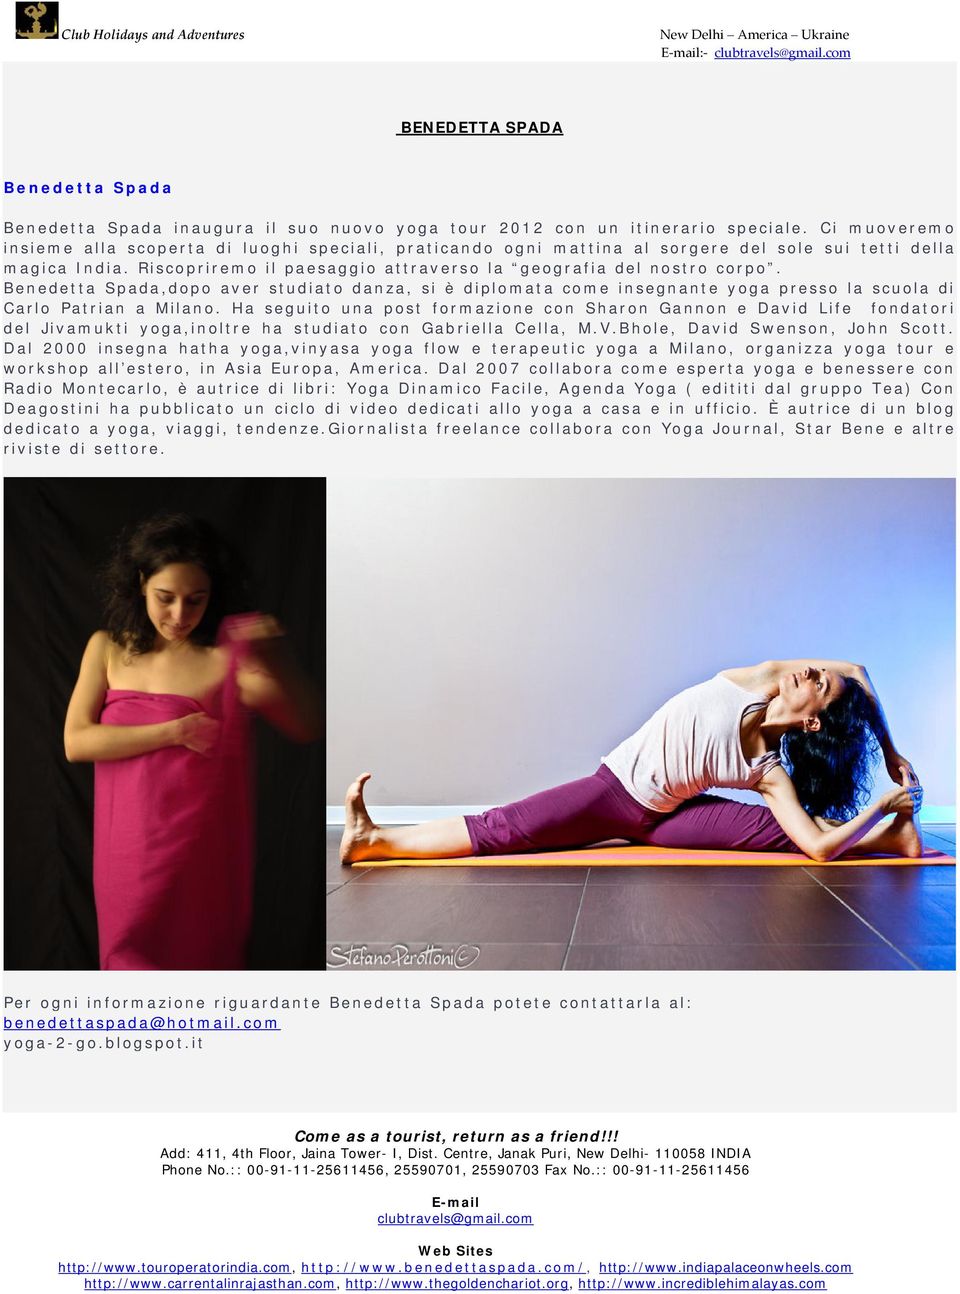 Benedetta Spada,dopo aver studiato danza, si è diplomata come insegnante yoga presso la scuola di Carlo Patrian a Milano.